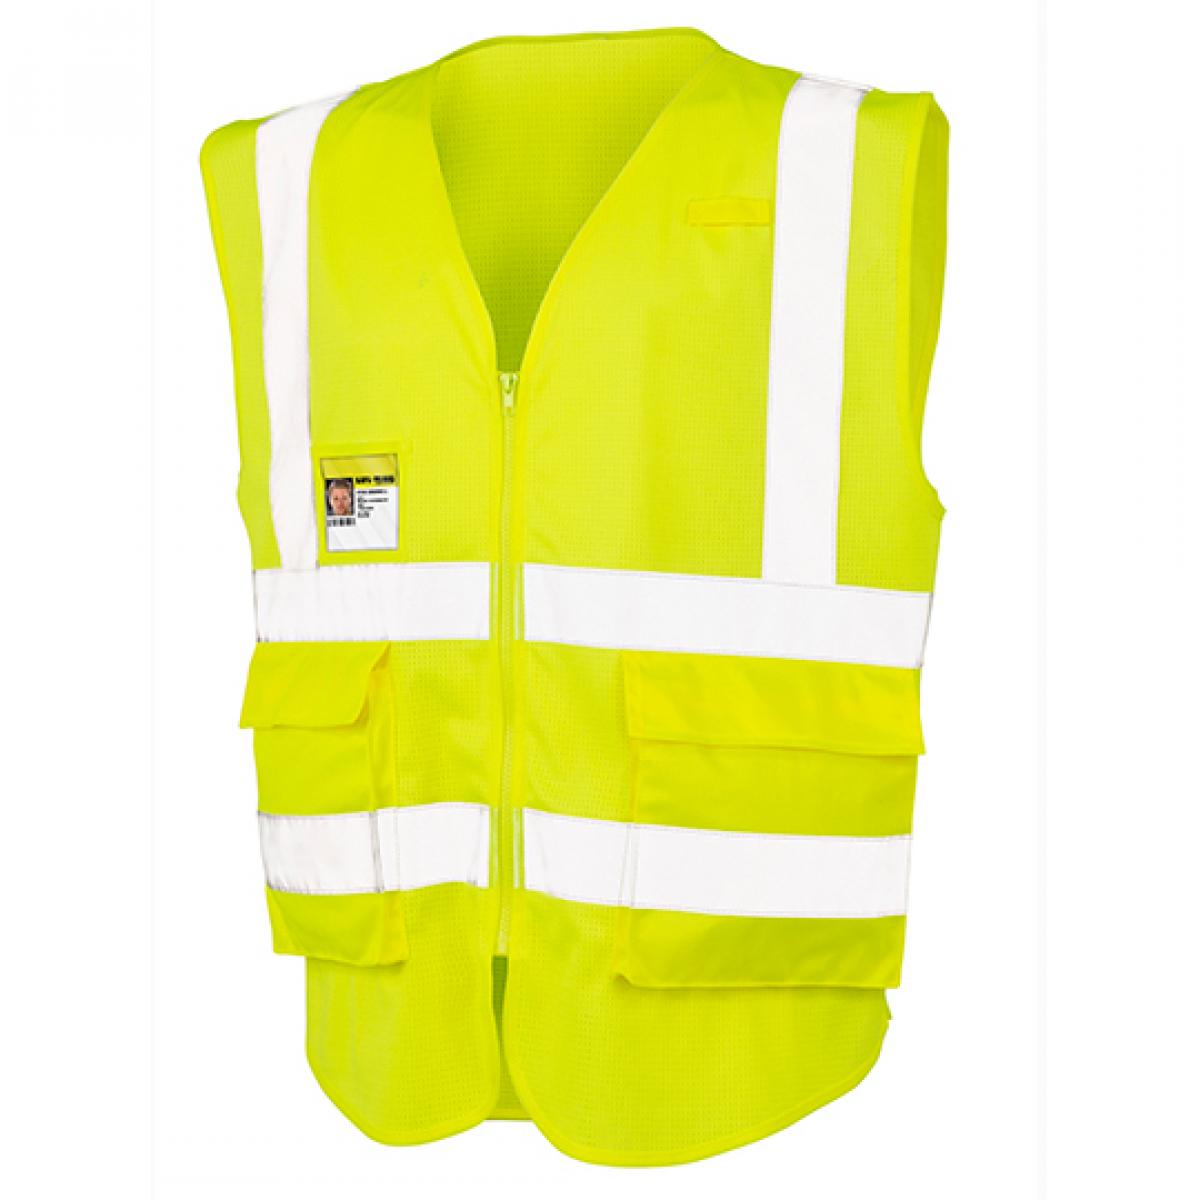 Hersteller: Safe-Guard Herstellernummer: R479X Artikelbezeichnung: Executive Cool Mesh Safety Vest - Sicherheitsweste Farbe: Fluorescent Yellow